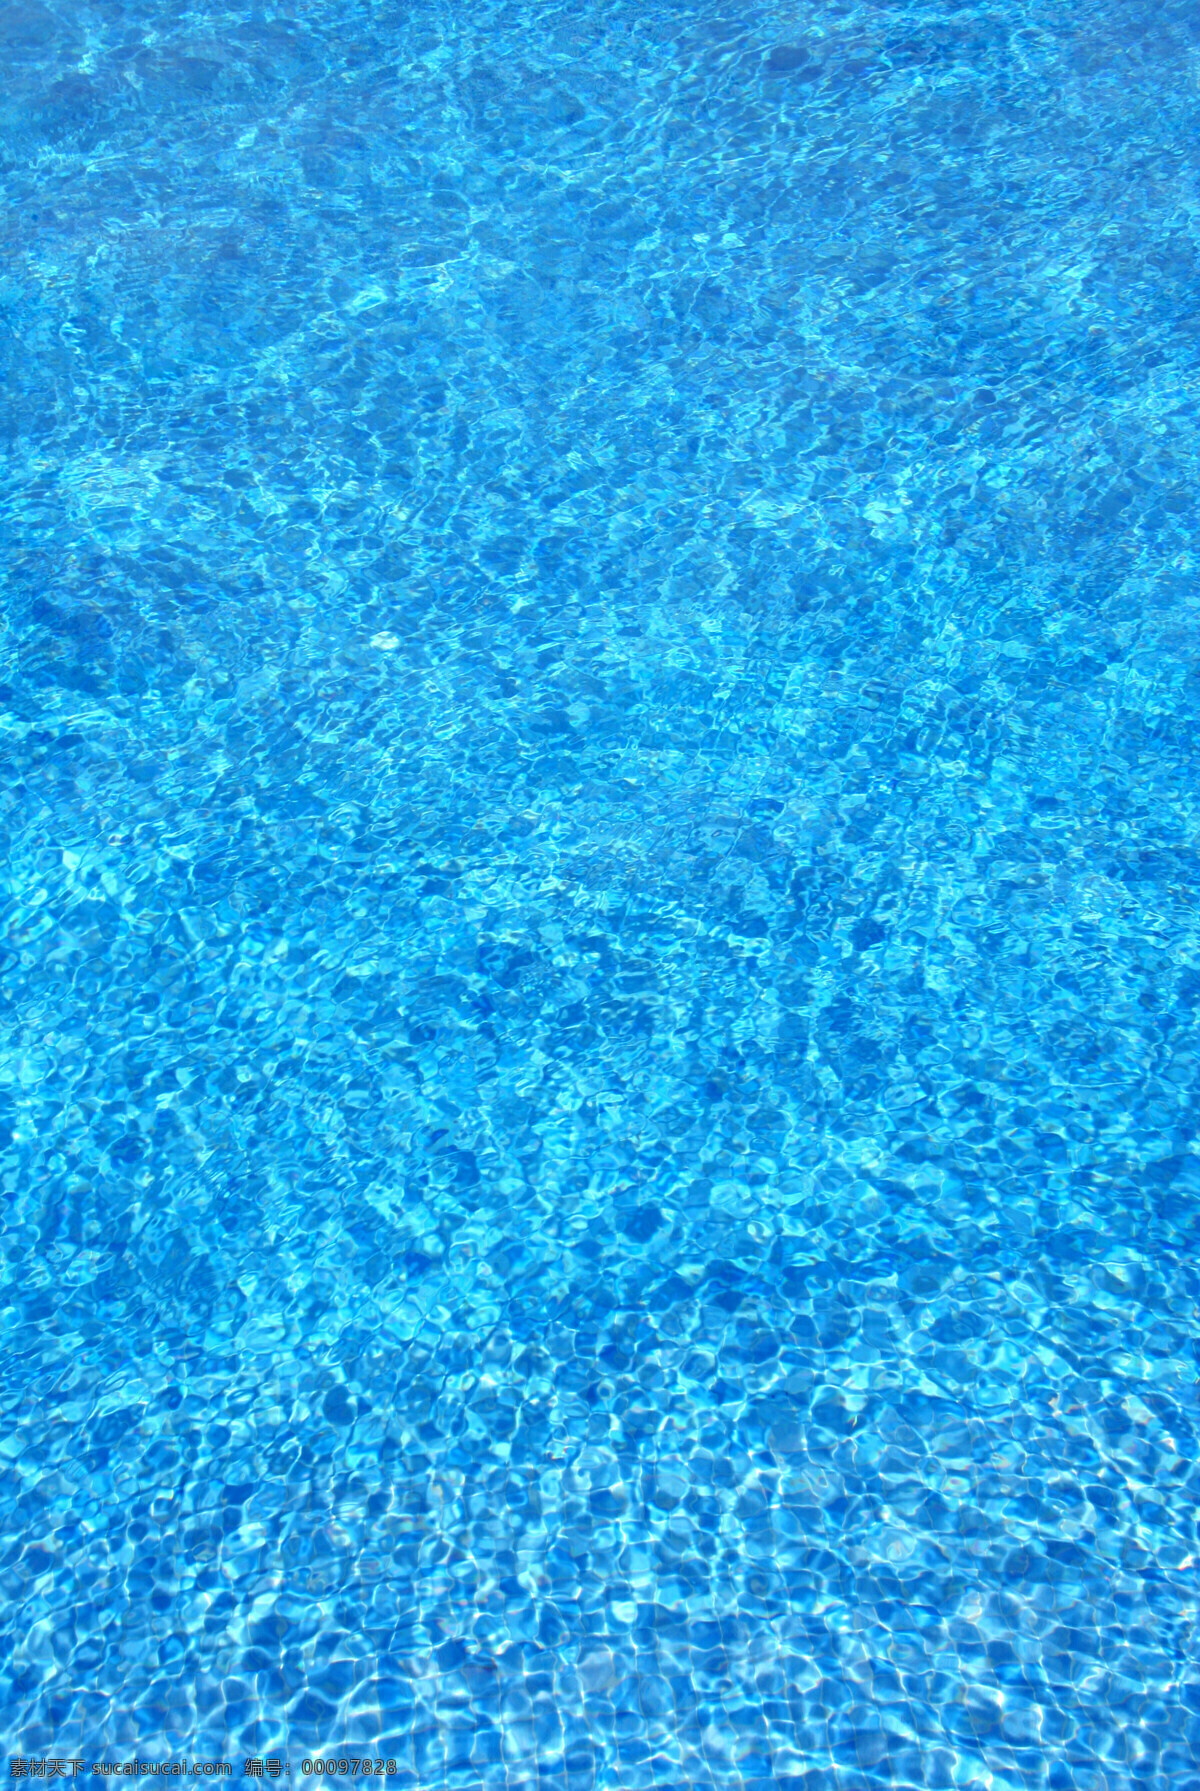 水纹背景 水纹 水波 水滴 蓝色 清凉 高清图片 背景底纹 底纹边框